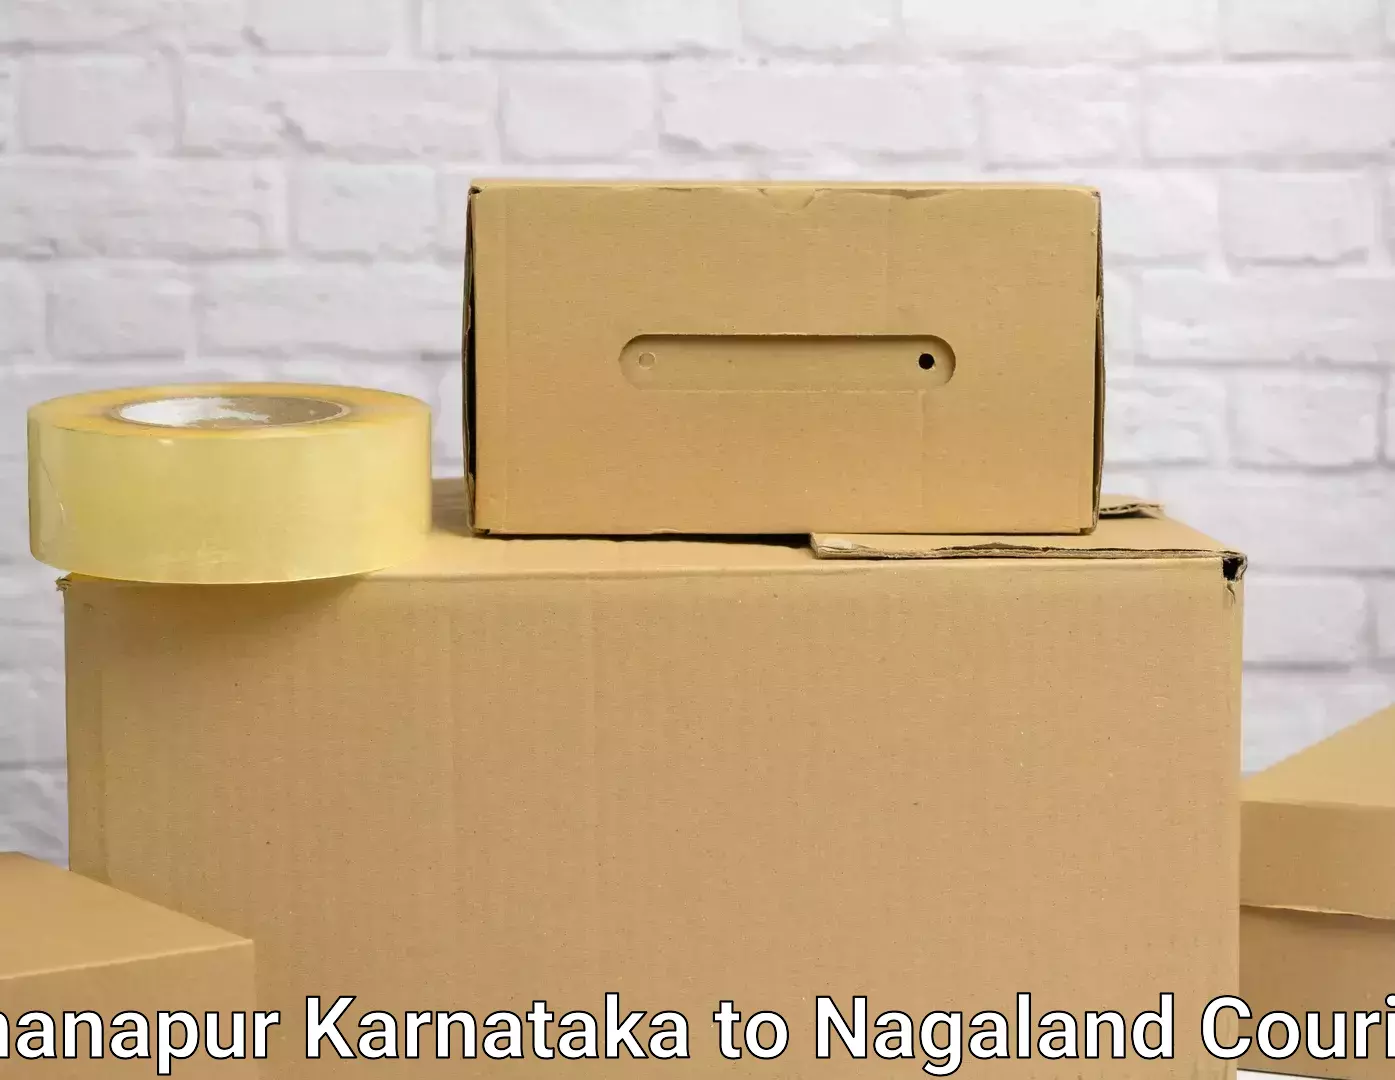 Moving service excellence Khanapur Karnataka to NIT Nagaland